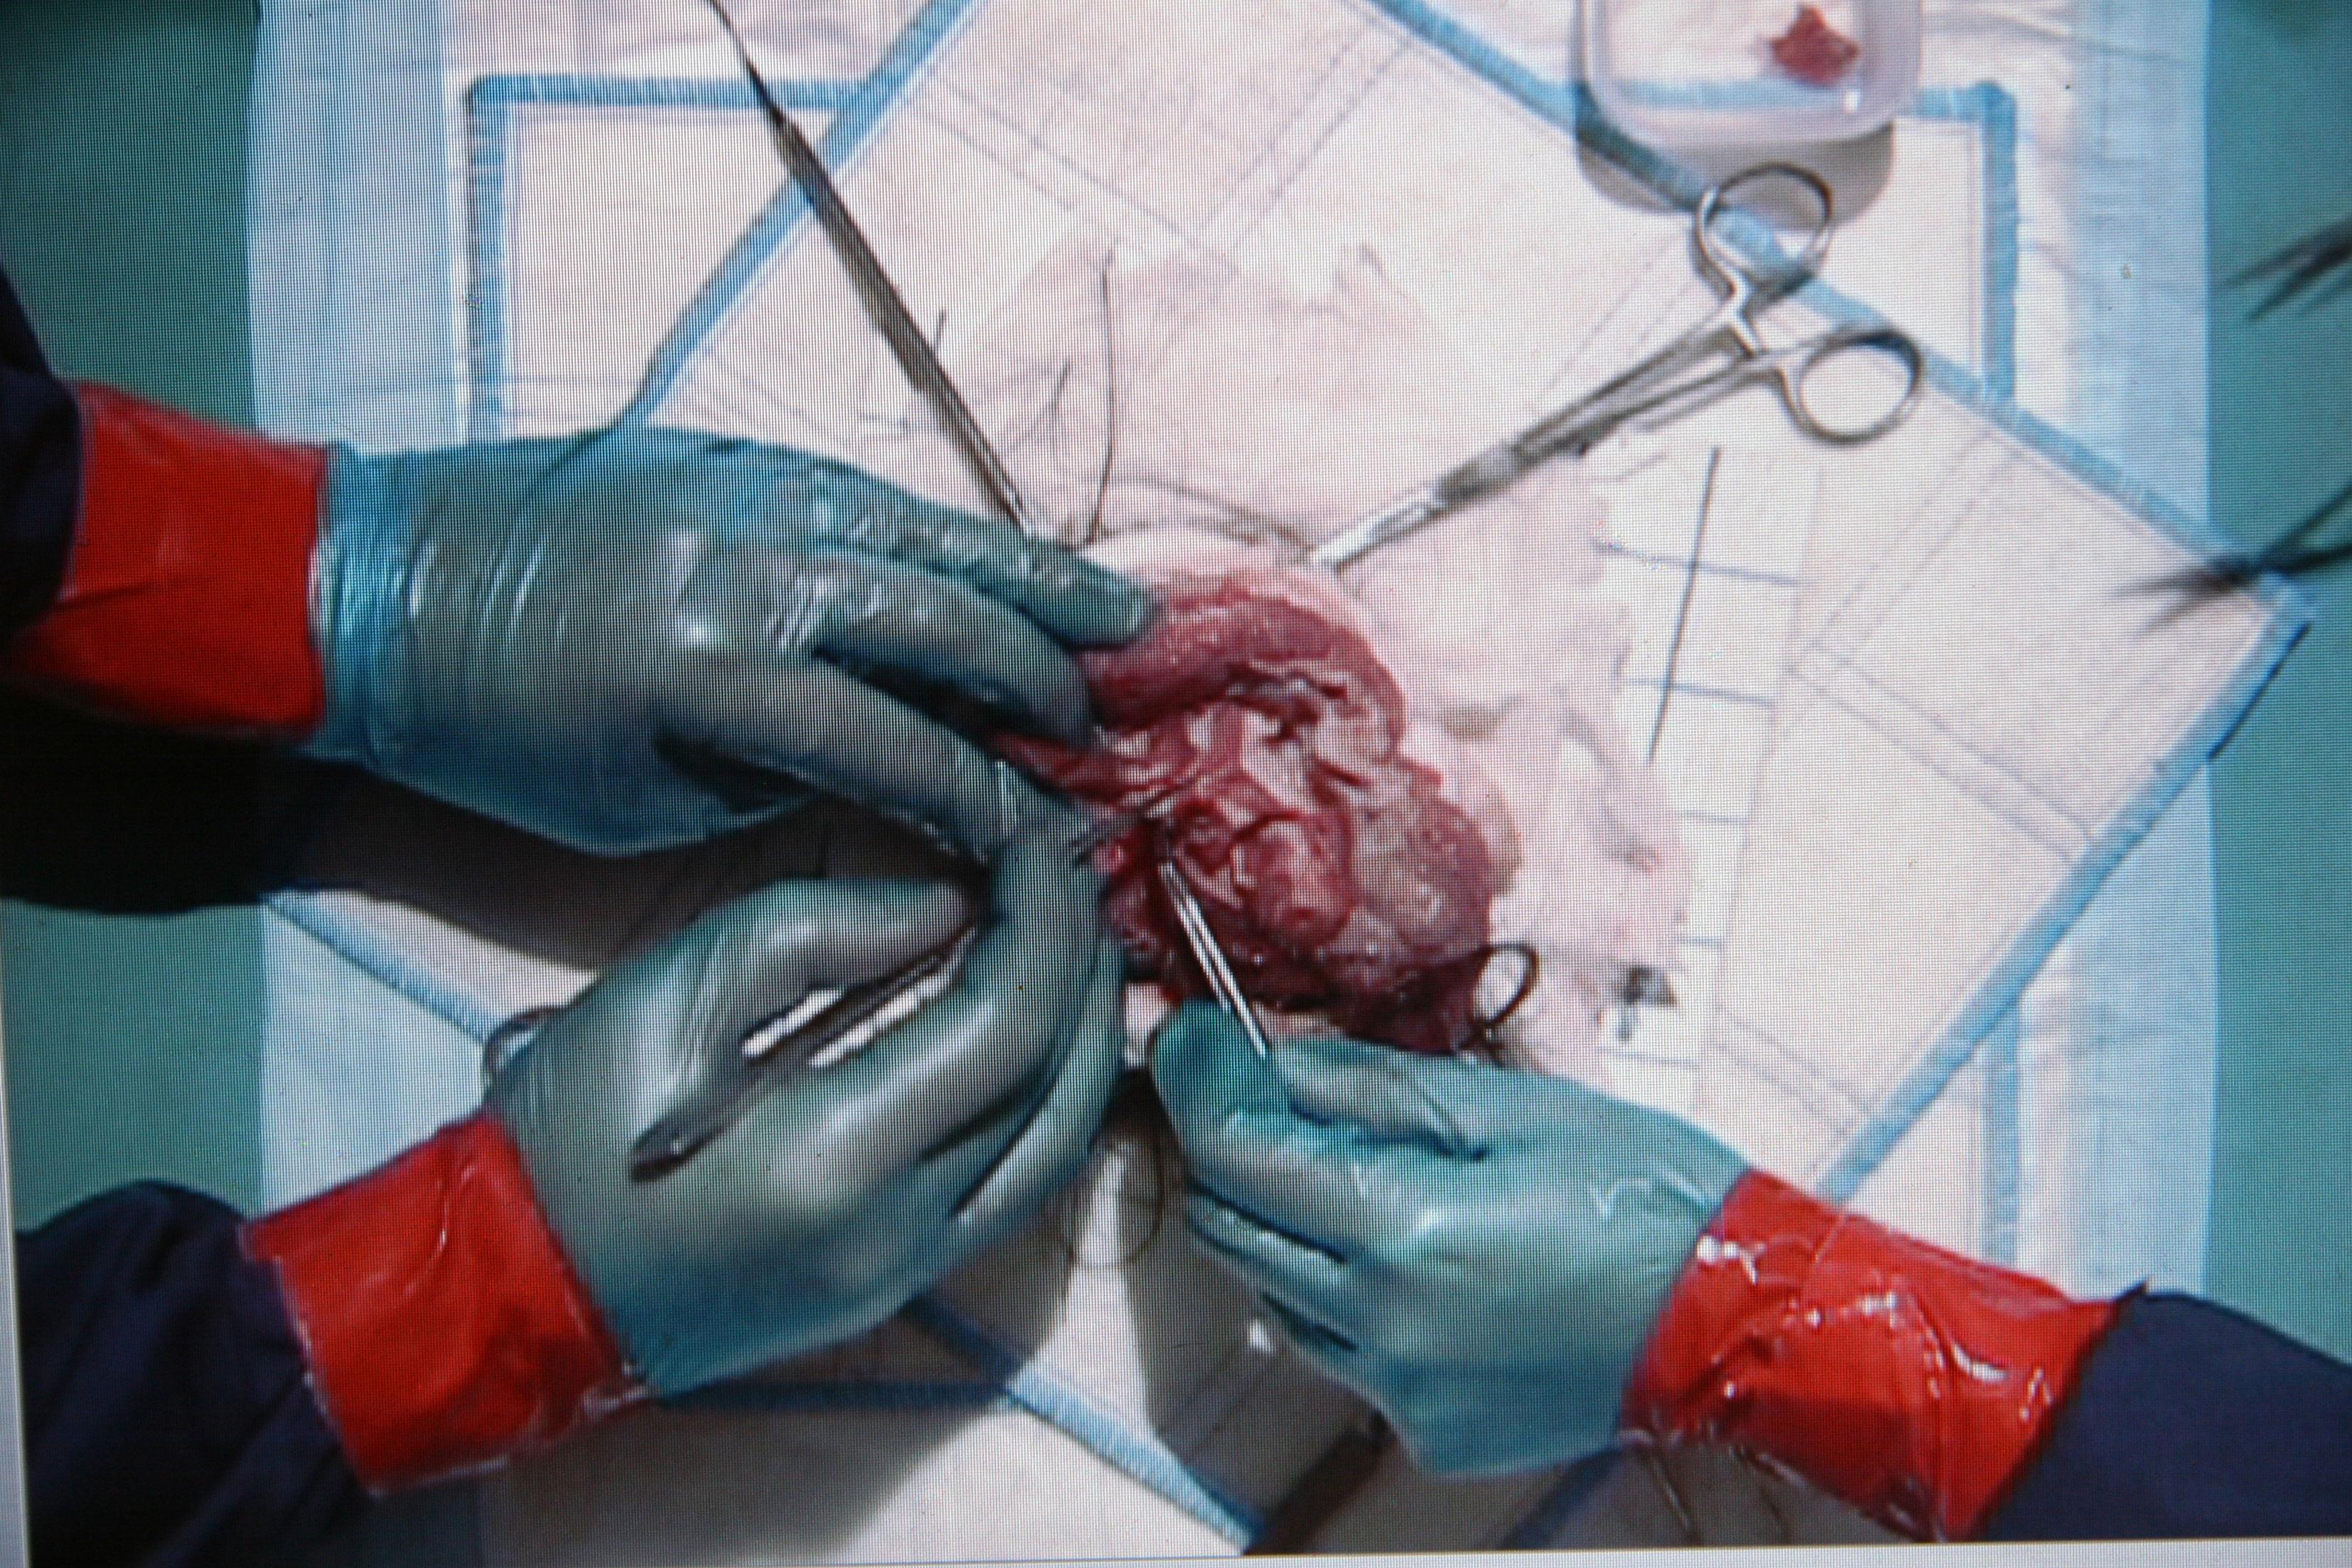 ovarian teratoma histology stain